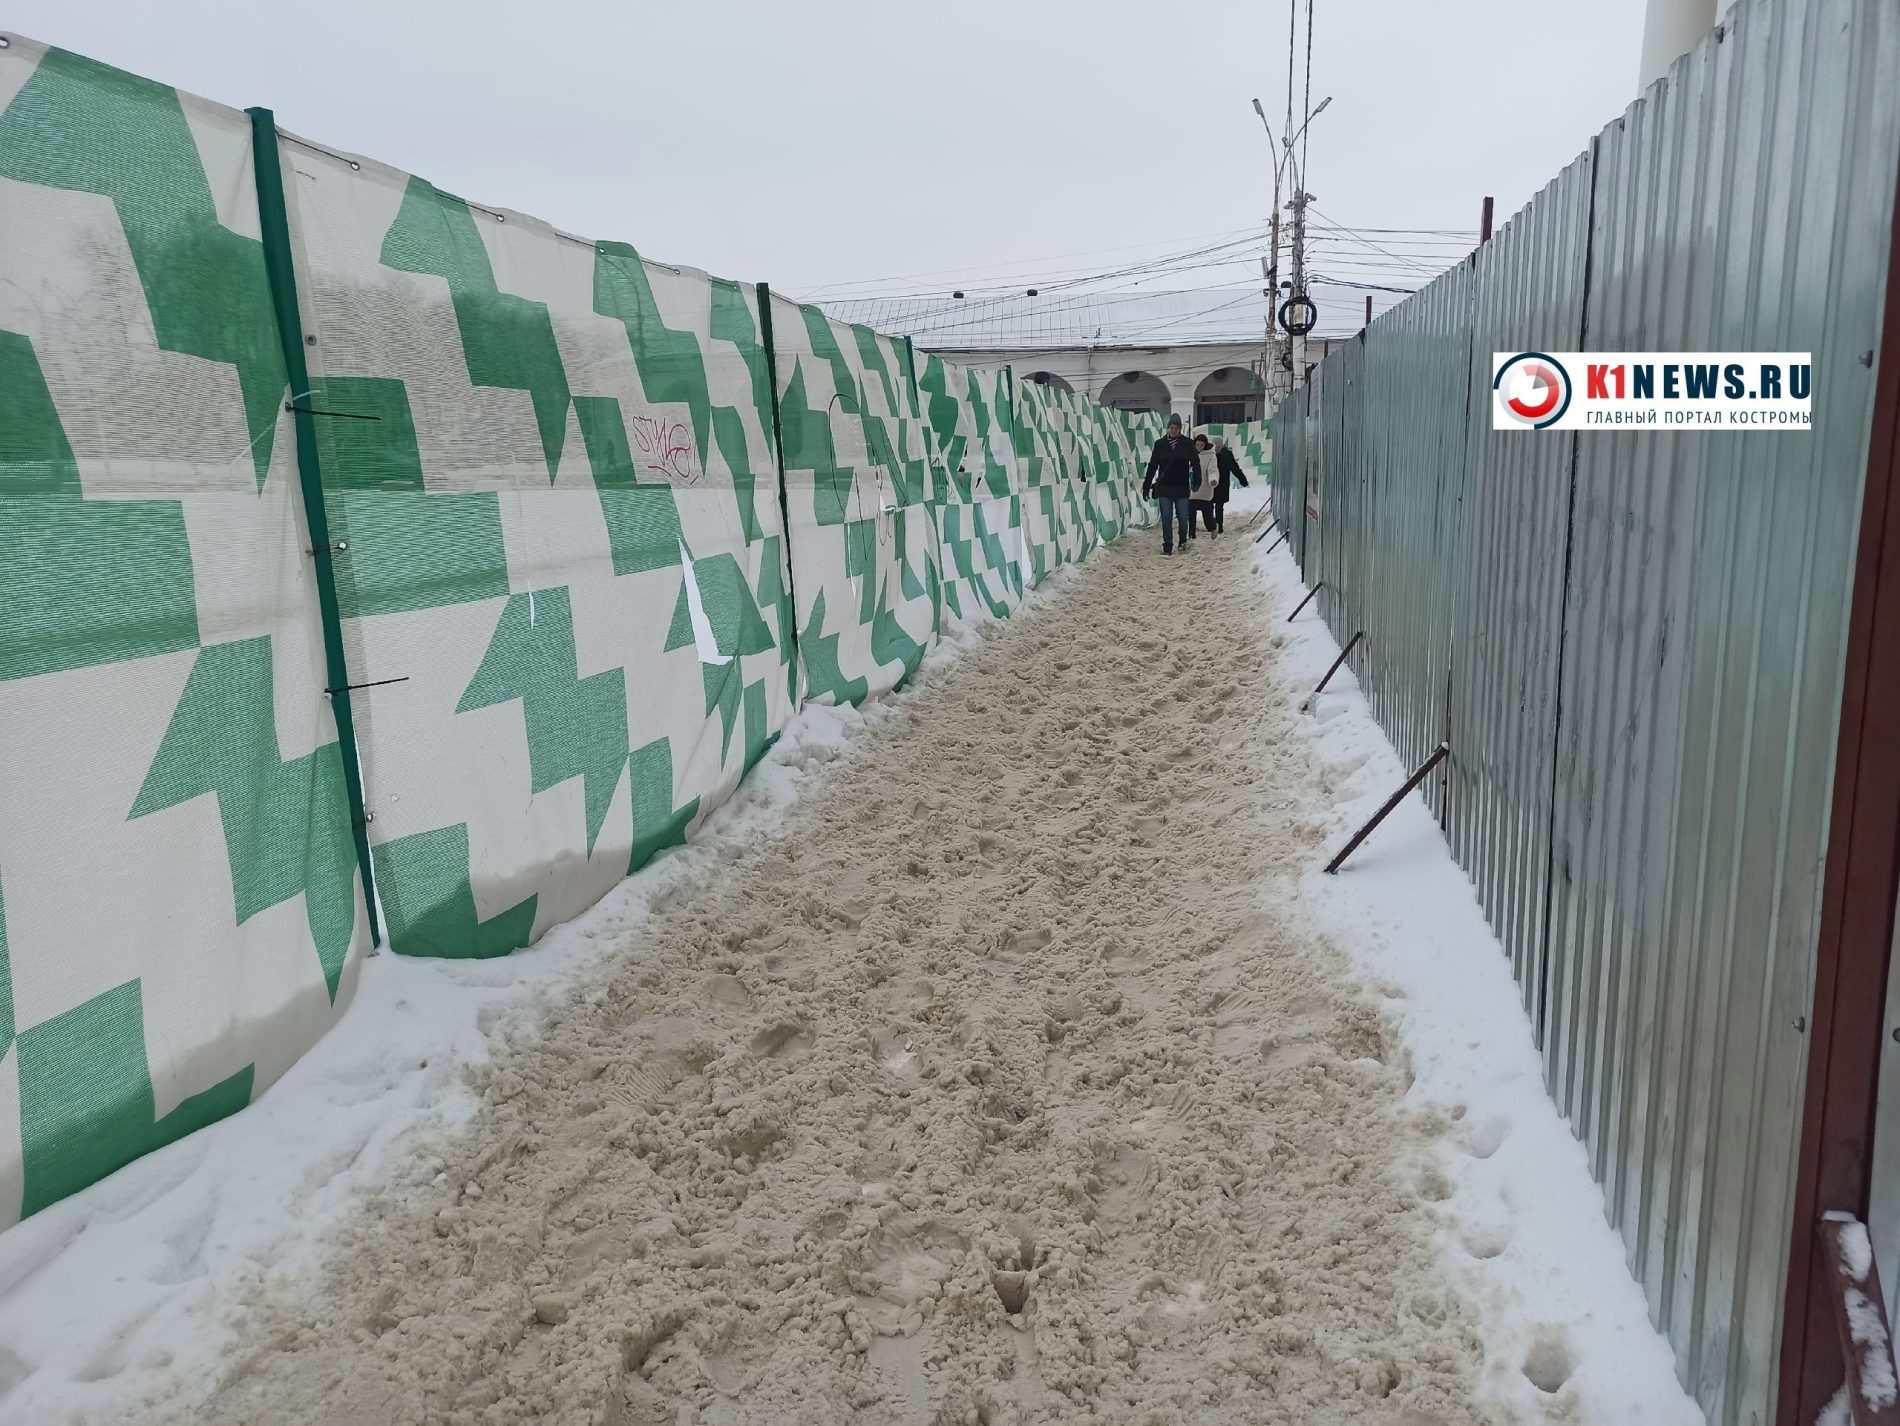 Горшочек, не вари! Пешеходы в Костроме сыты снежной «кашей» на тротуарах